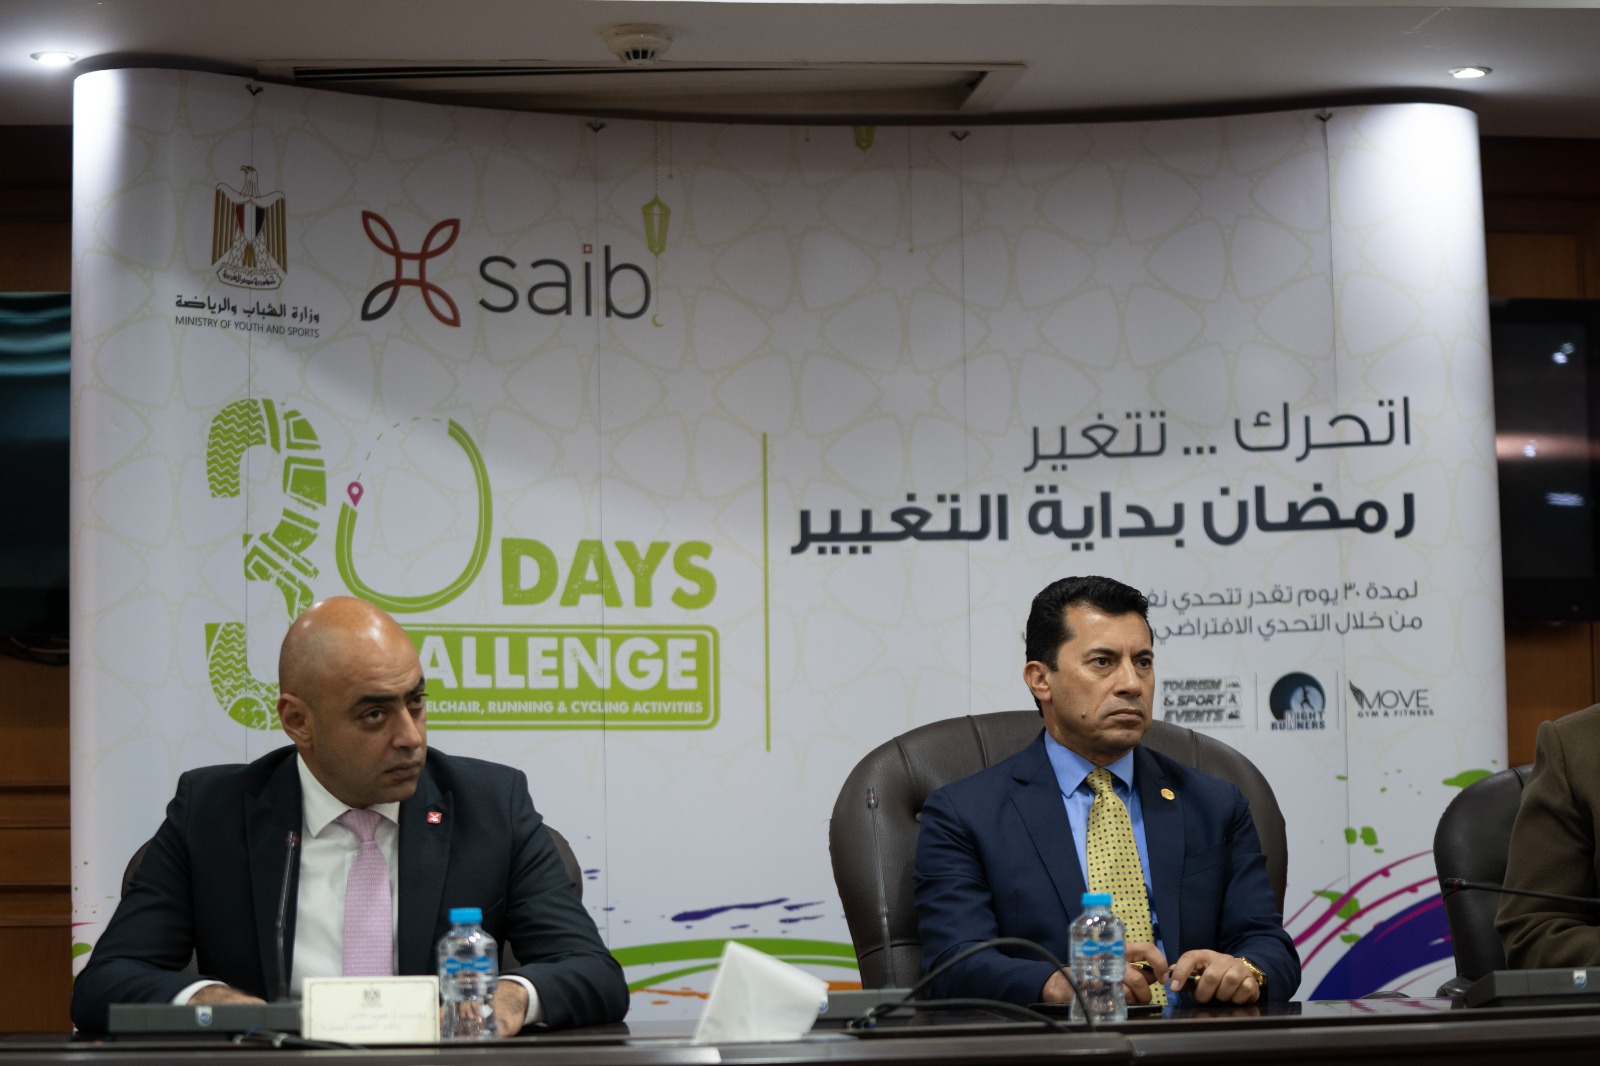 برعاية بنك saib.. وزير الرياضة يعلن تفاصيل برنامج «30 يوم تحدى رياضى افتراضى»